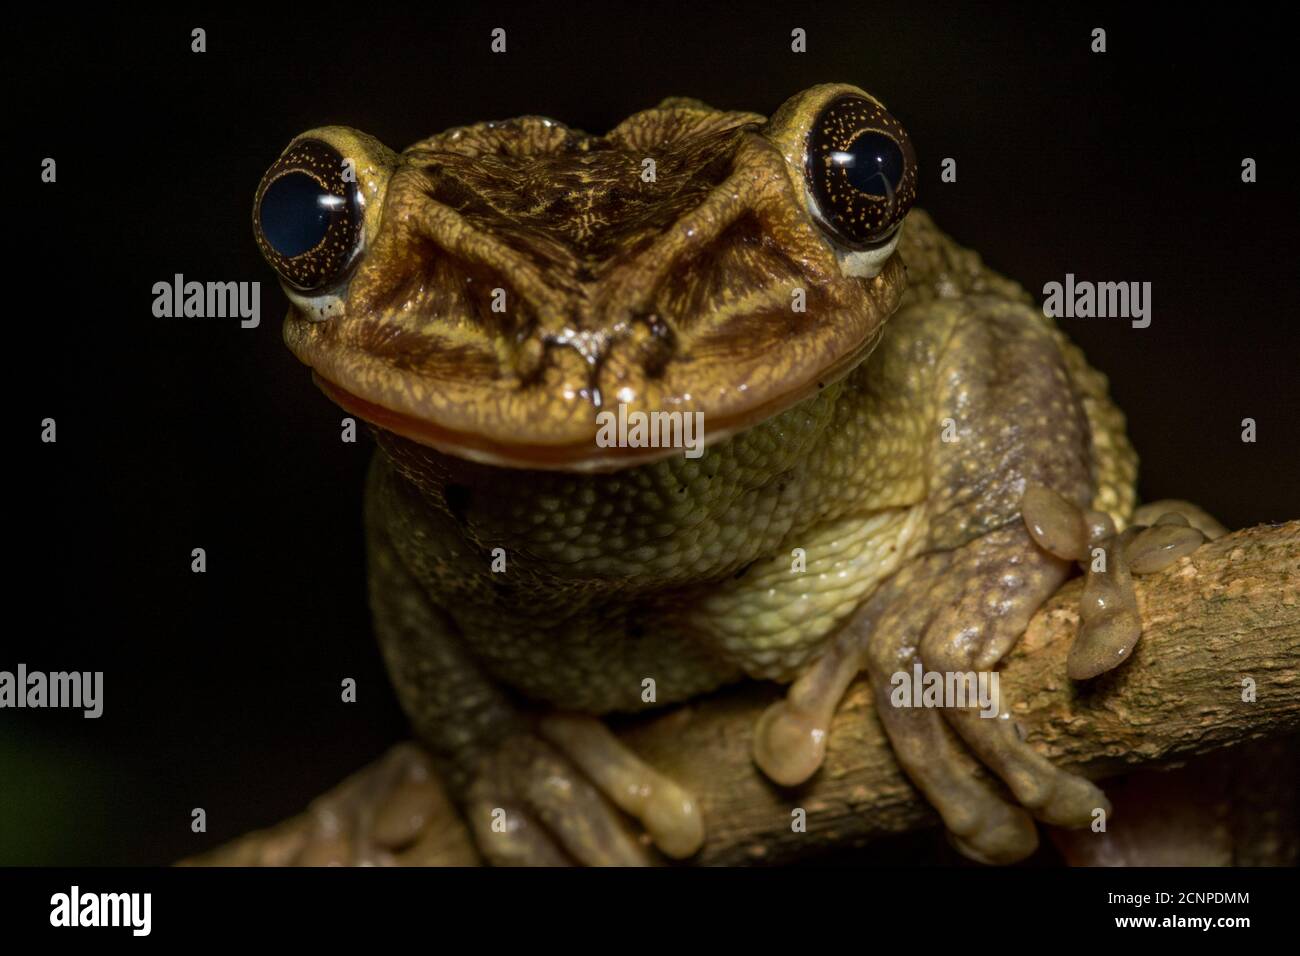 La rana de árbol con cabeza de casque de Jordania (Trachycephalus jordani) de los bosques secos del oeste de Ecuador es una de las ranas más inusuales del país. Foto de stock